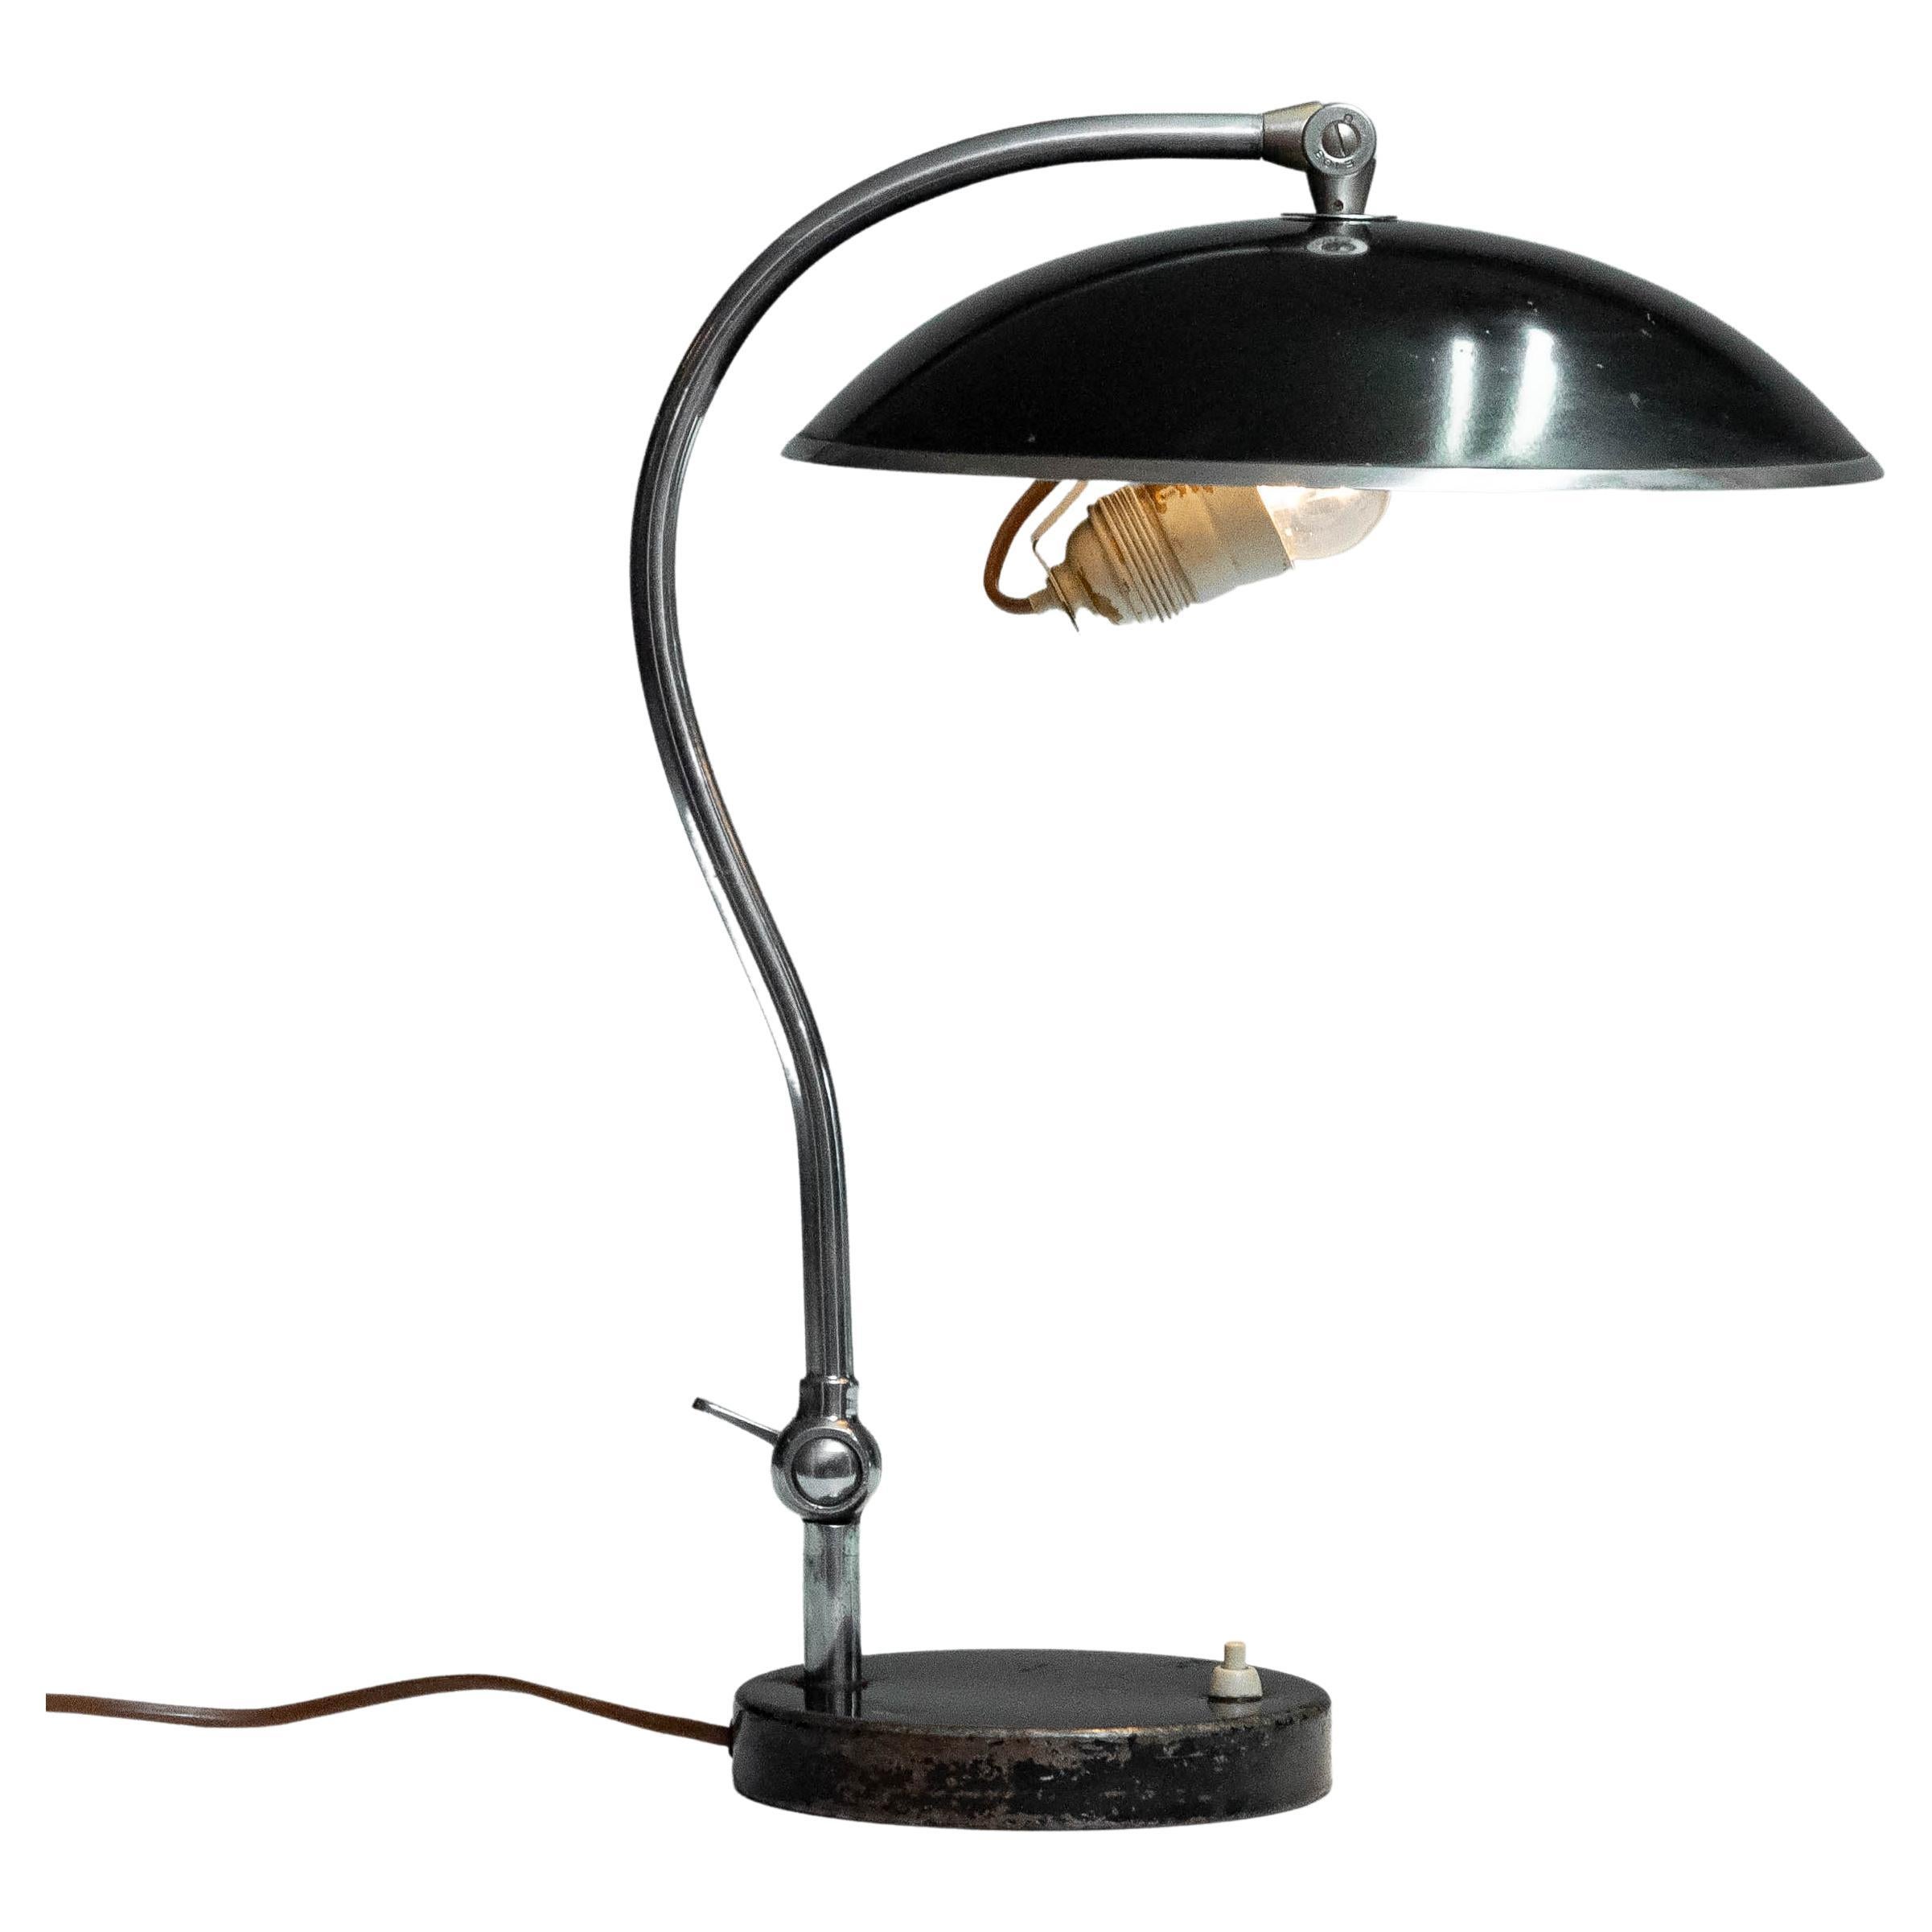 Belle et originale lampe de bureau / de table laquée noire fabriquée en Suède par Boréns Borås dans les années 1930, numéro de modèle 528. Ce modèle a inspiré d'autres sociétés qui se sont inspirées de cette lampe de bureau/de table de style